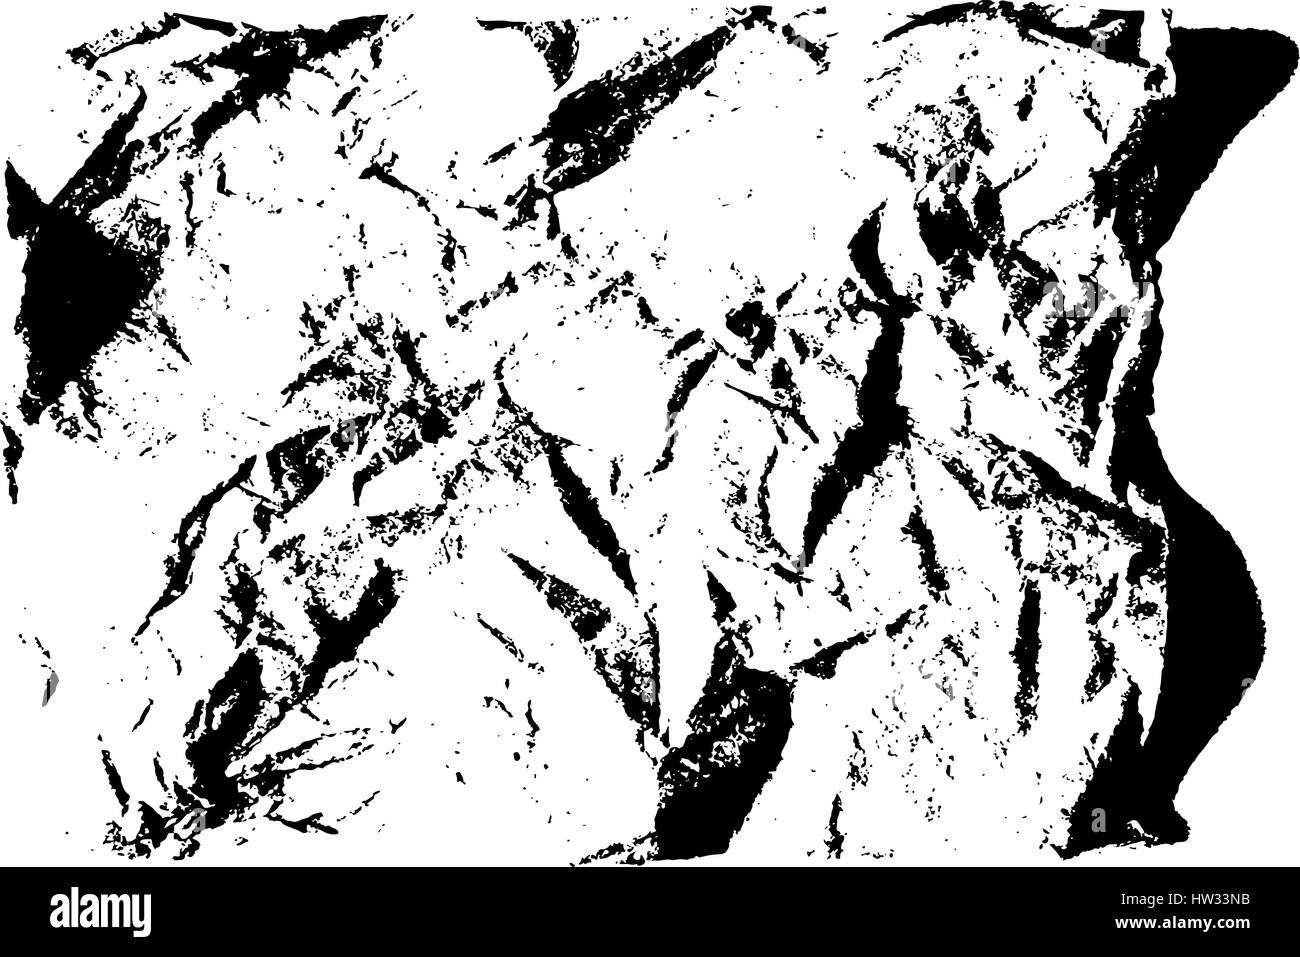 Texture grunge isolés de papier en noir et blanc, vintage background ressource. Vecteur EPS10. Illustration de Vecteur